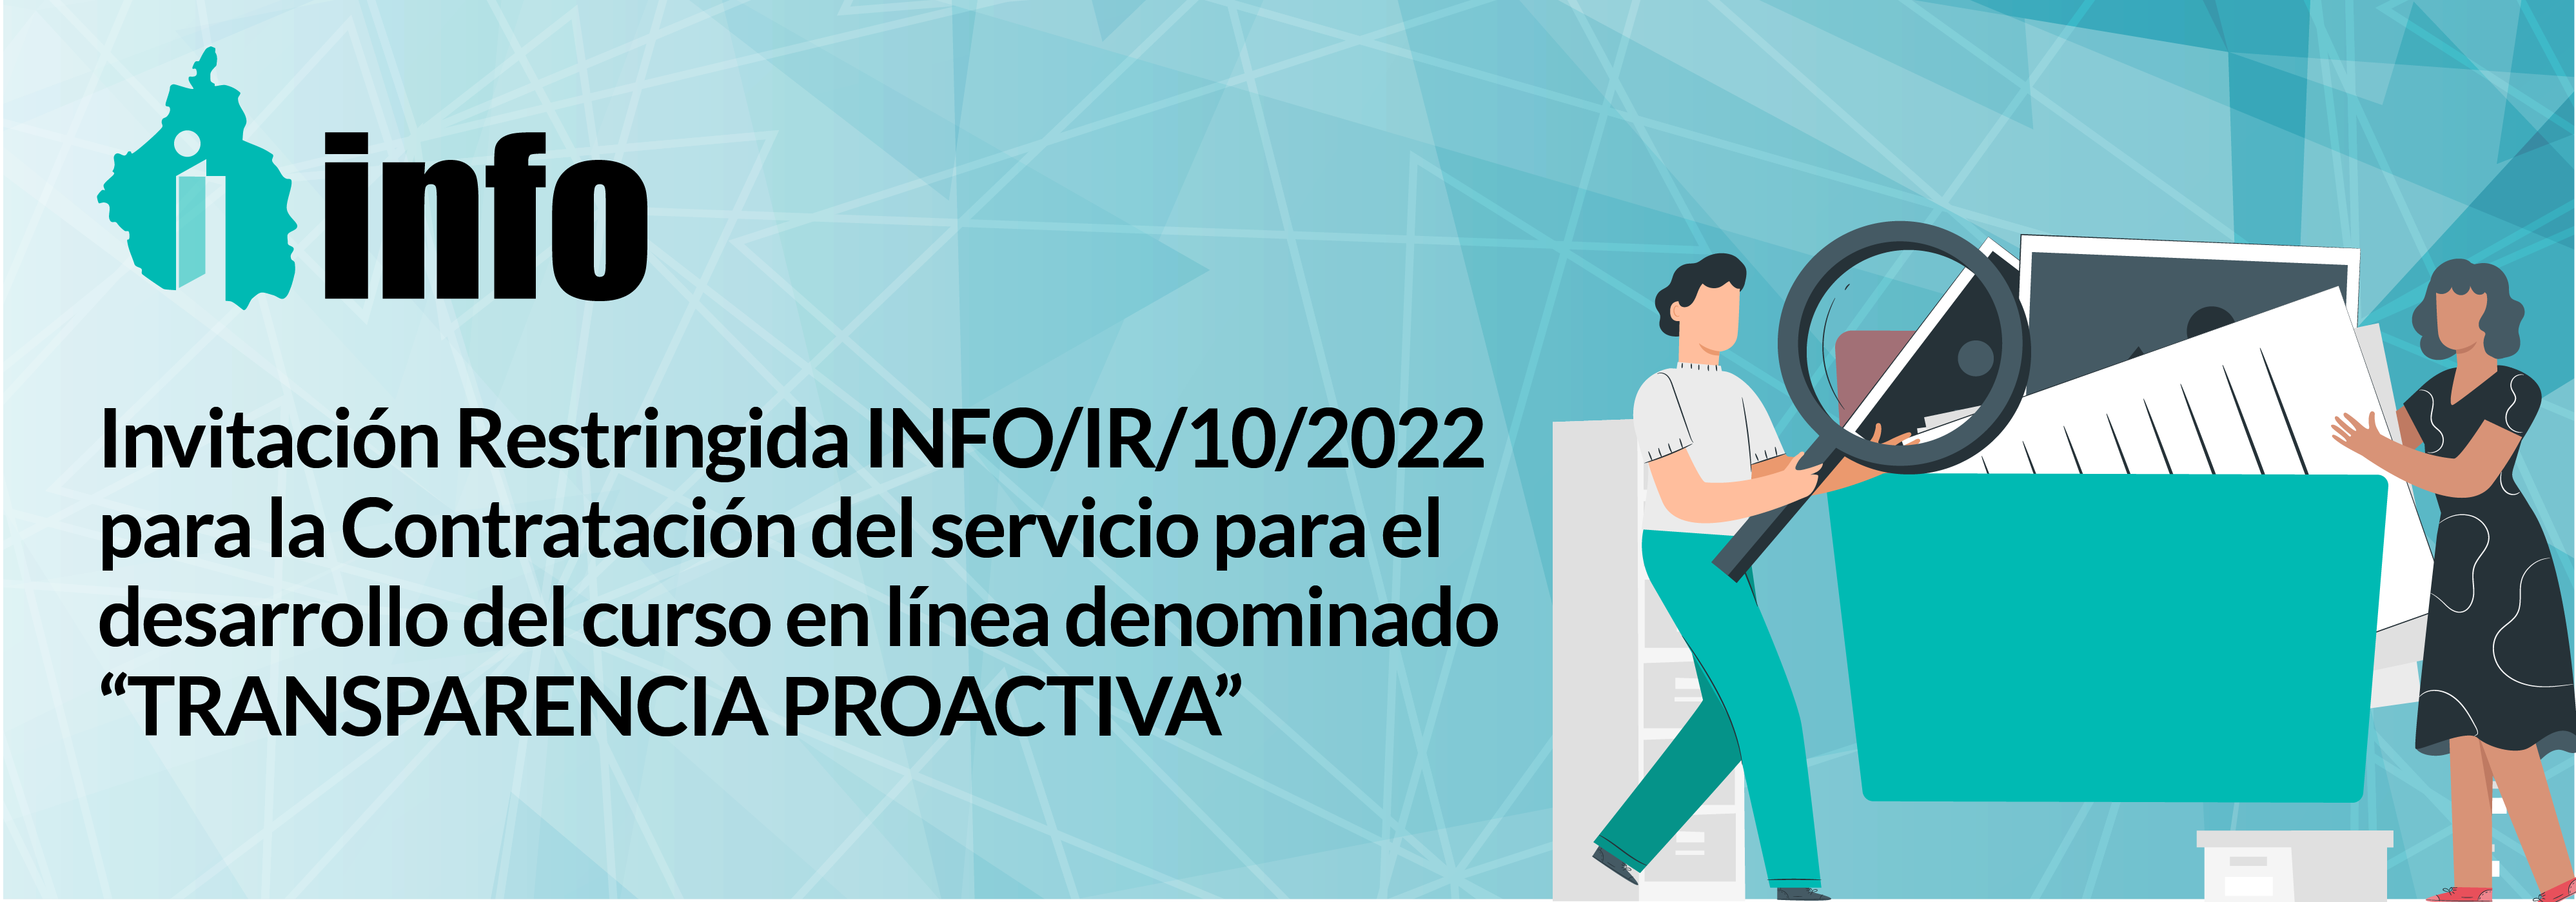 Convocatoria INFO/IR/10/2022